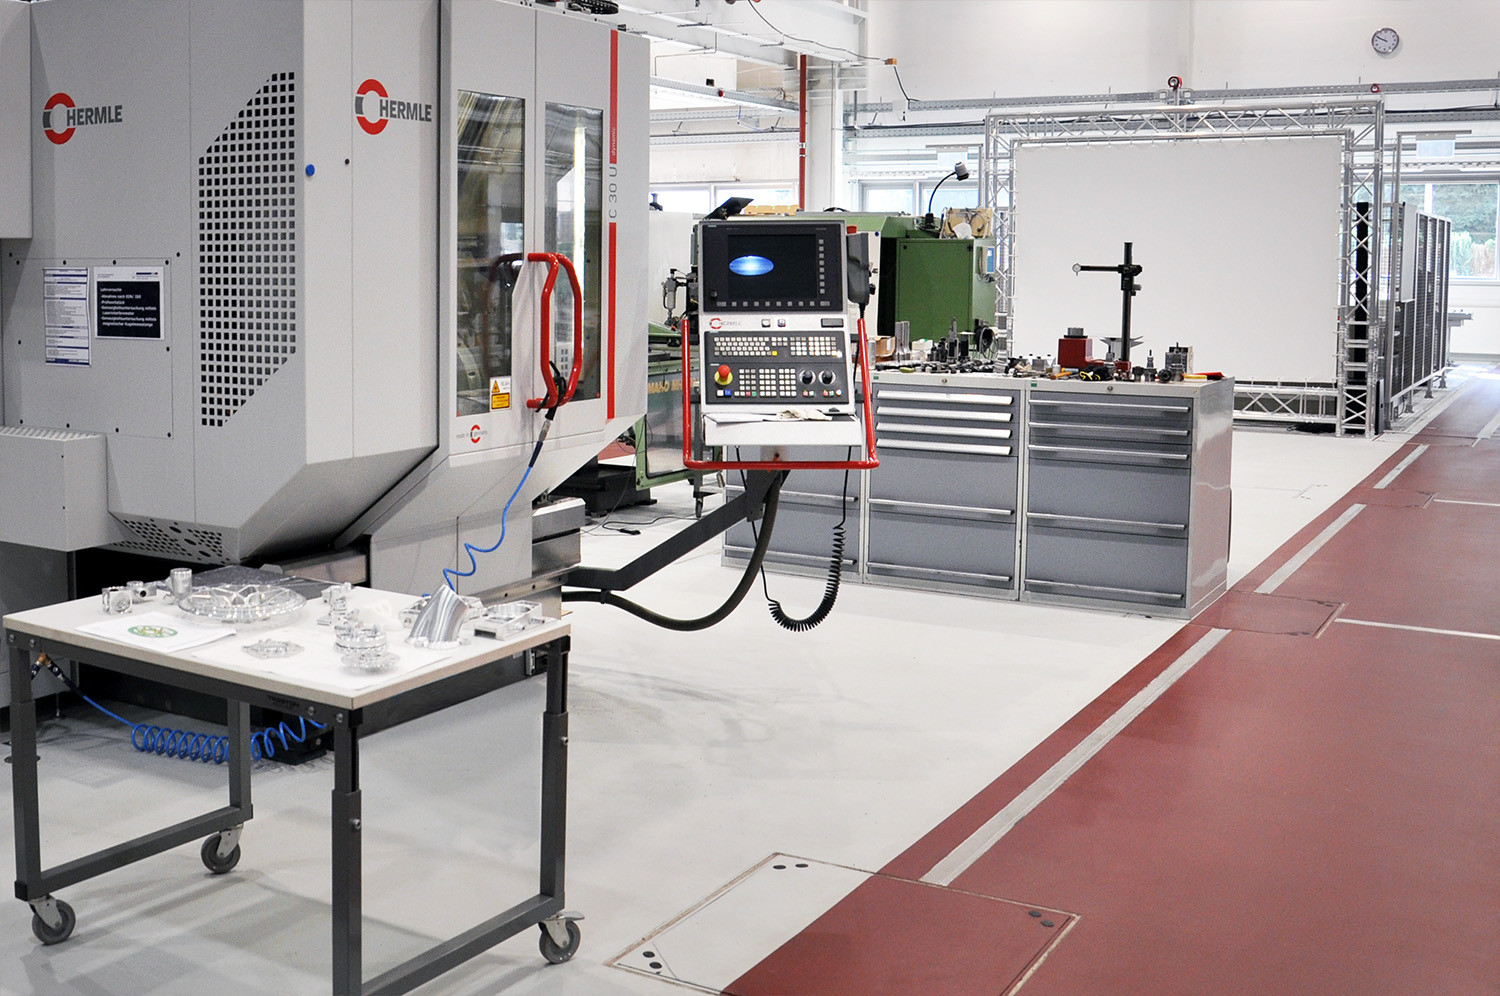 Foto: Bild einer modernen Laborhalle mit verschiedenen Anlagen und Maschinen.